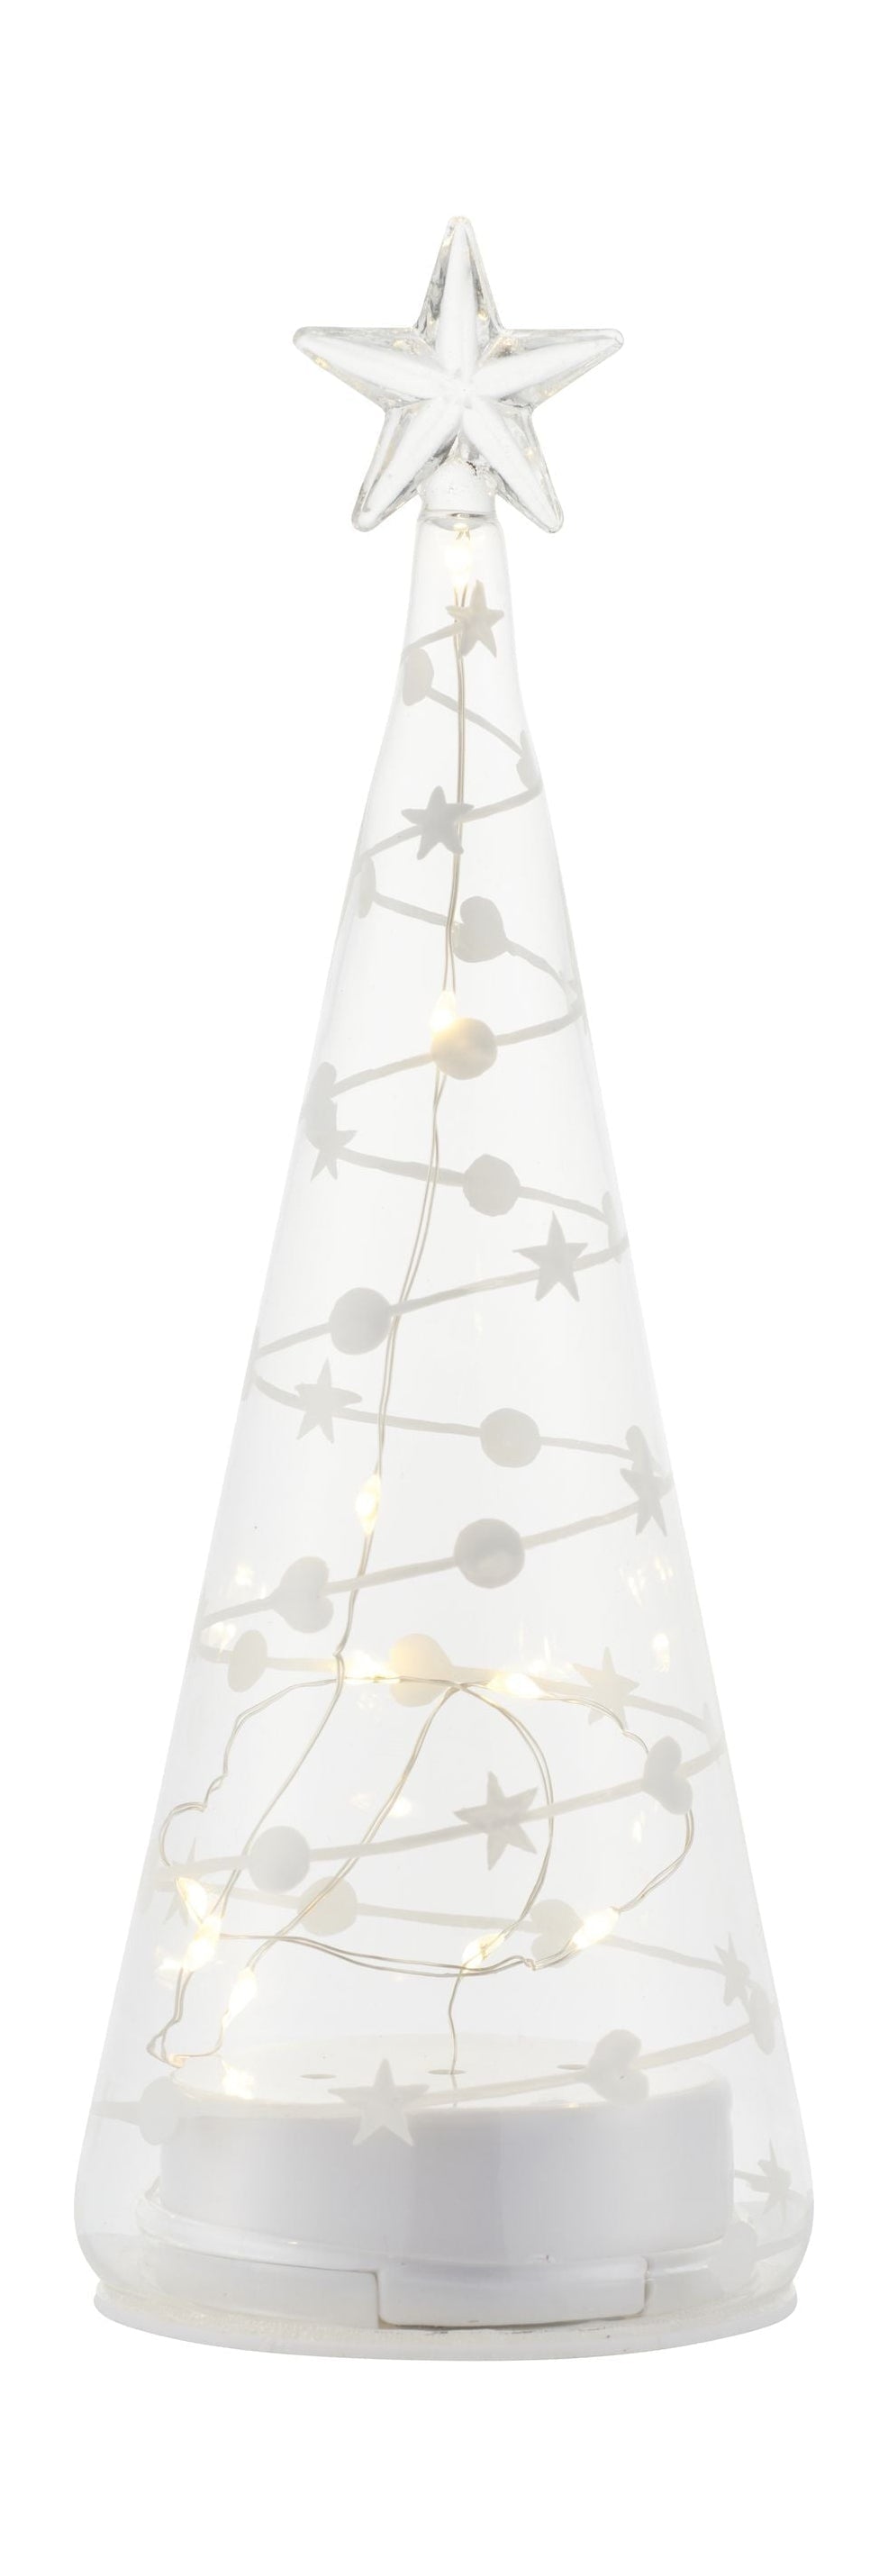 Sirius Sweet Christmas Tree, H22 cm, blanc / clair